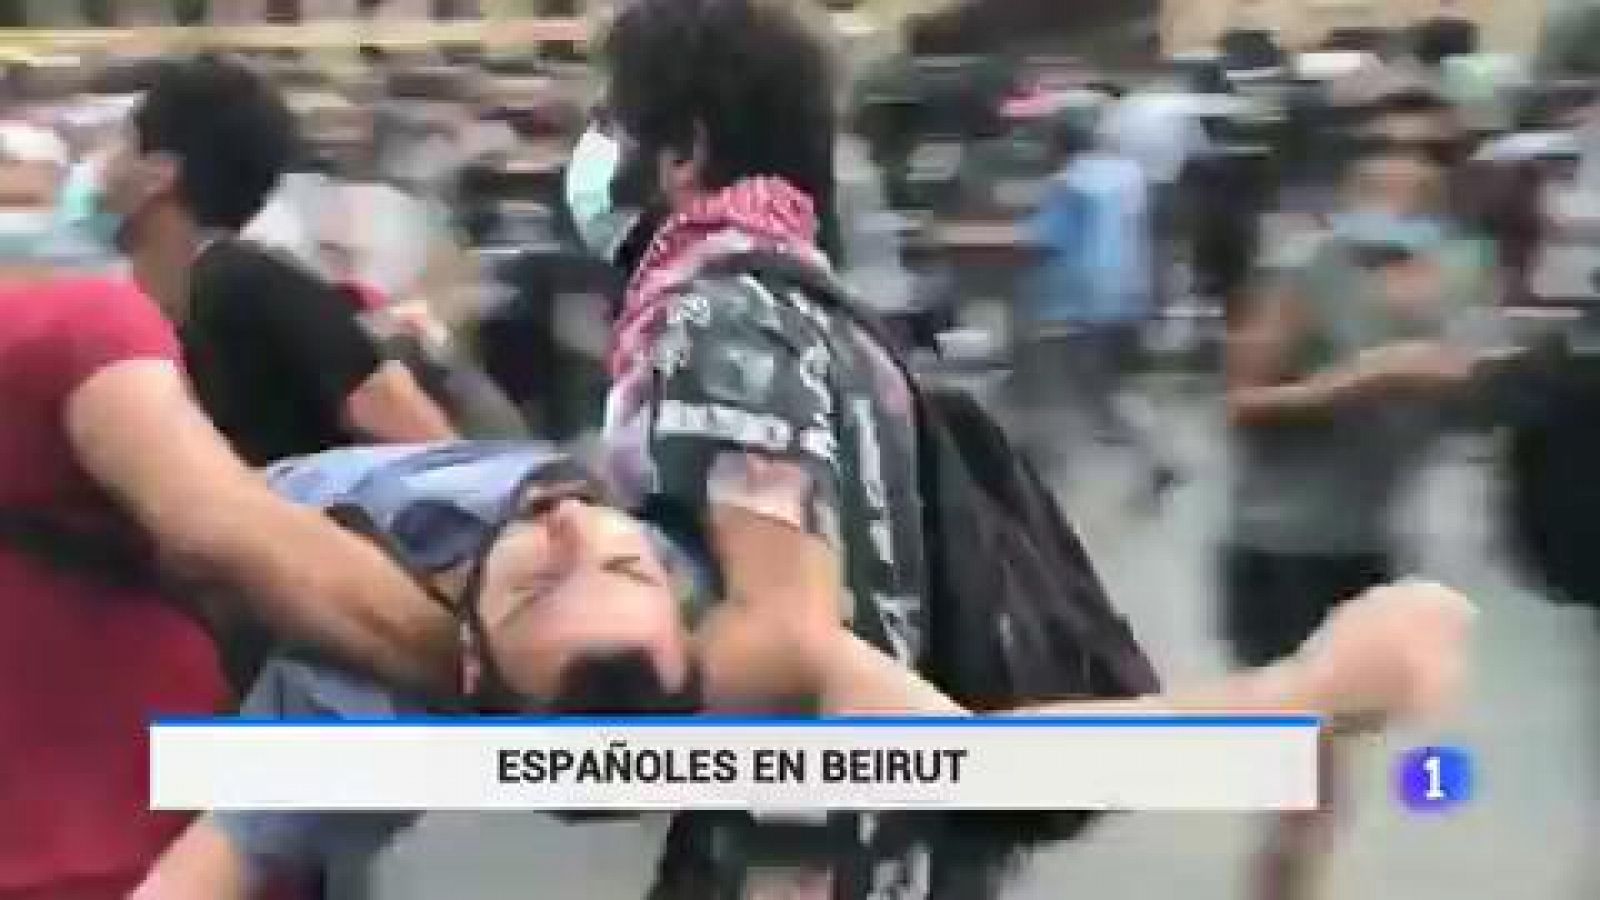 Un español relata las protestas en Beirut: "La revolución del año pasado ha vuelto con más furia"